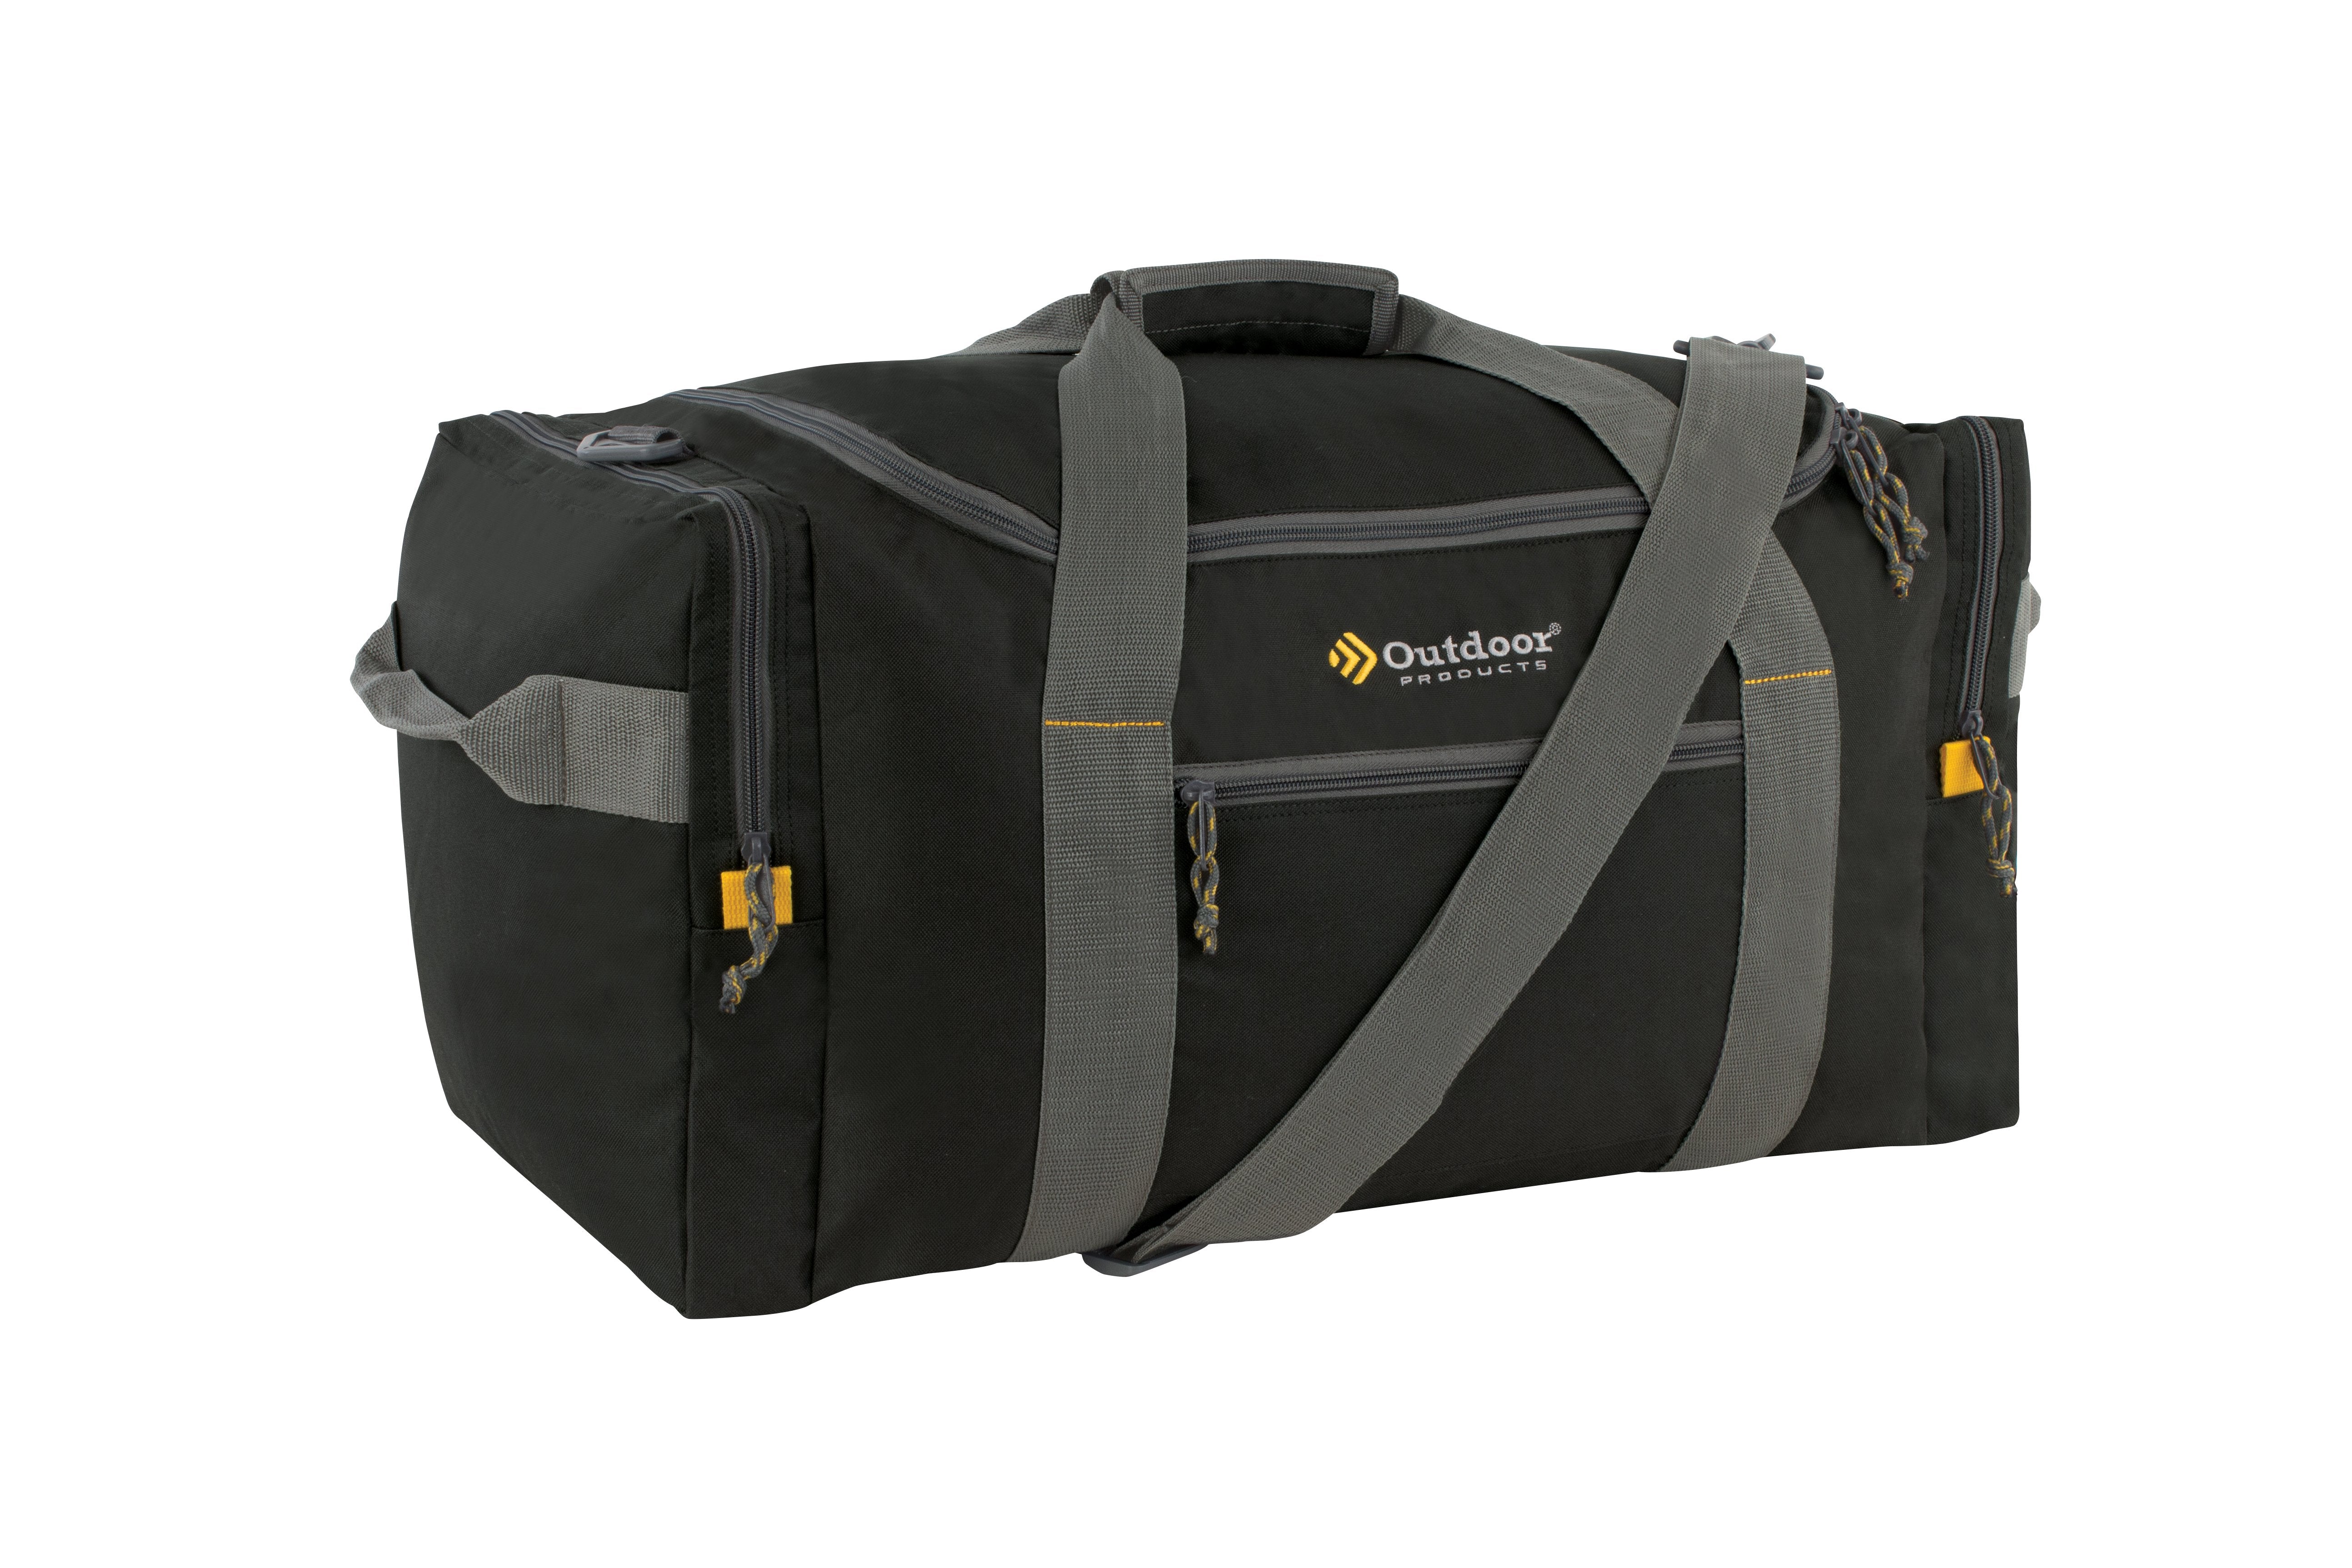 Foldable Travel Bag Organizer Extra Large Duffle Bag Suitcase